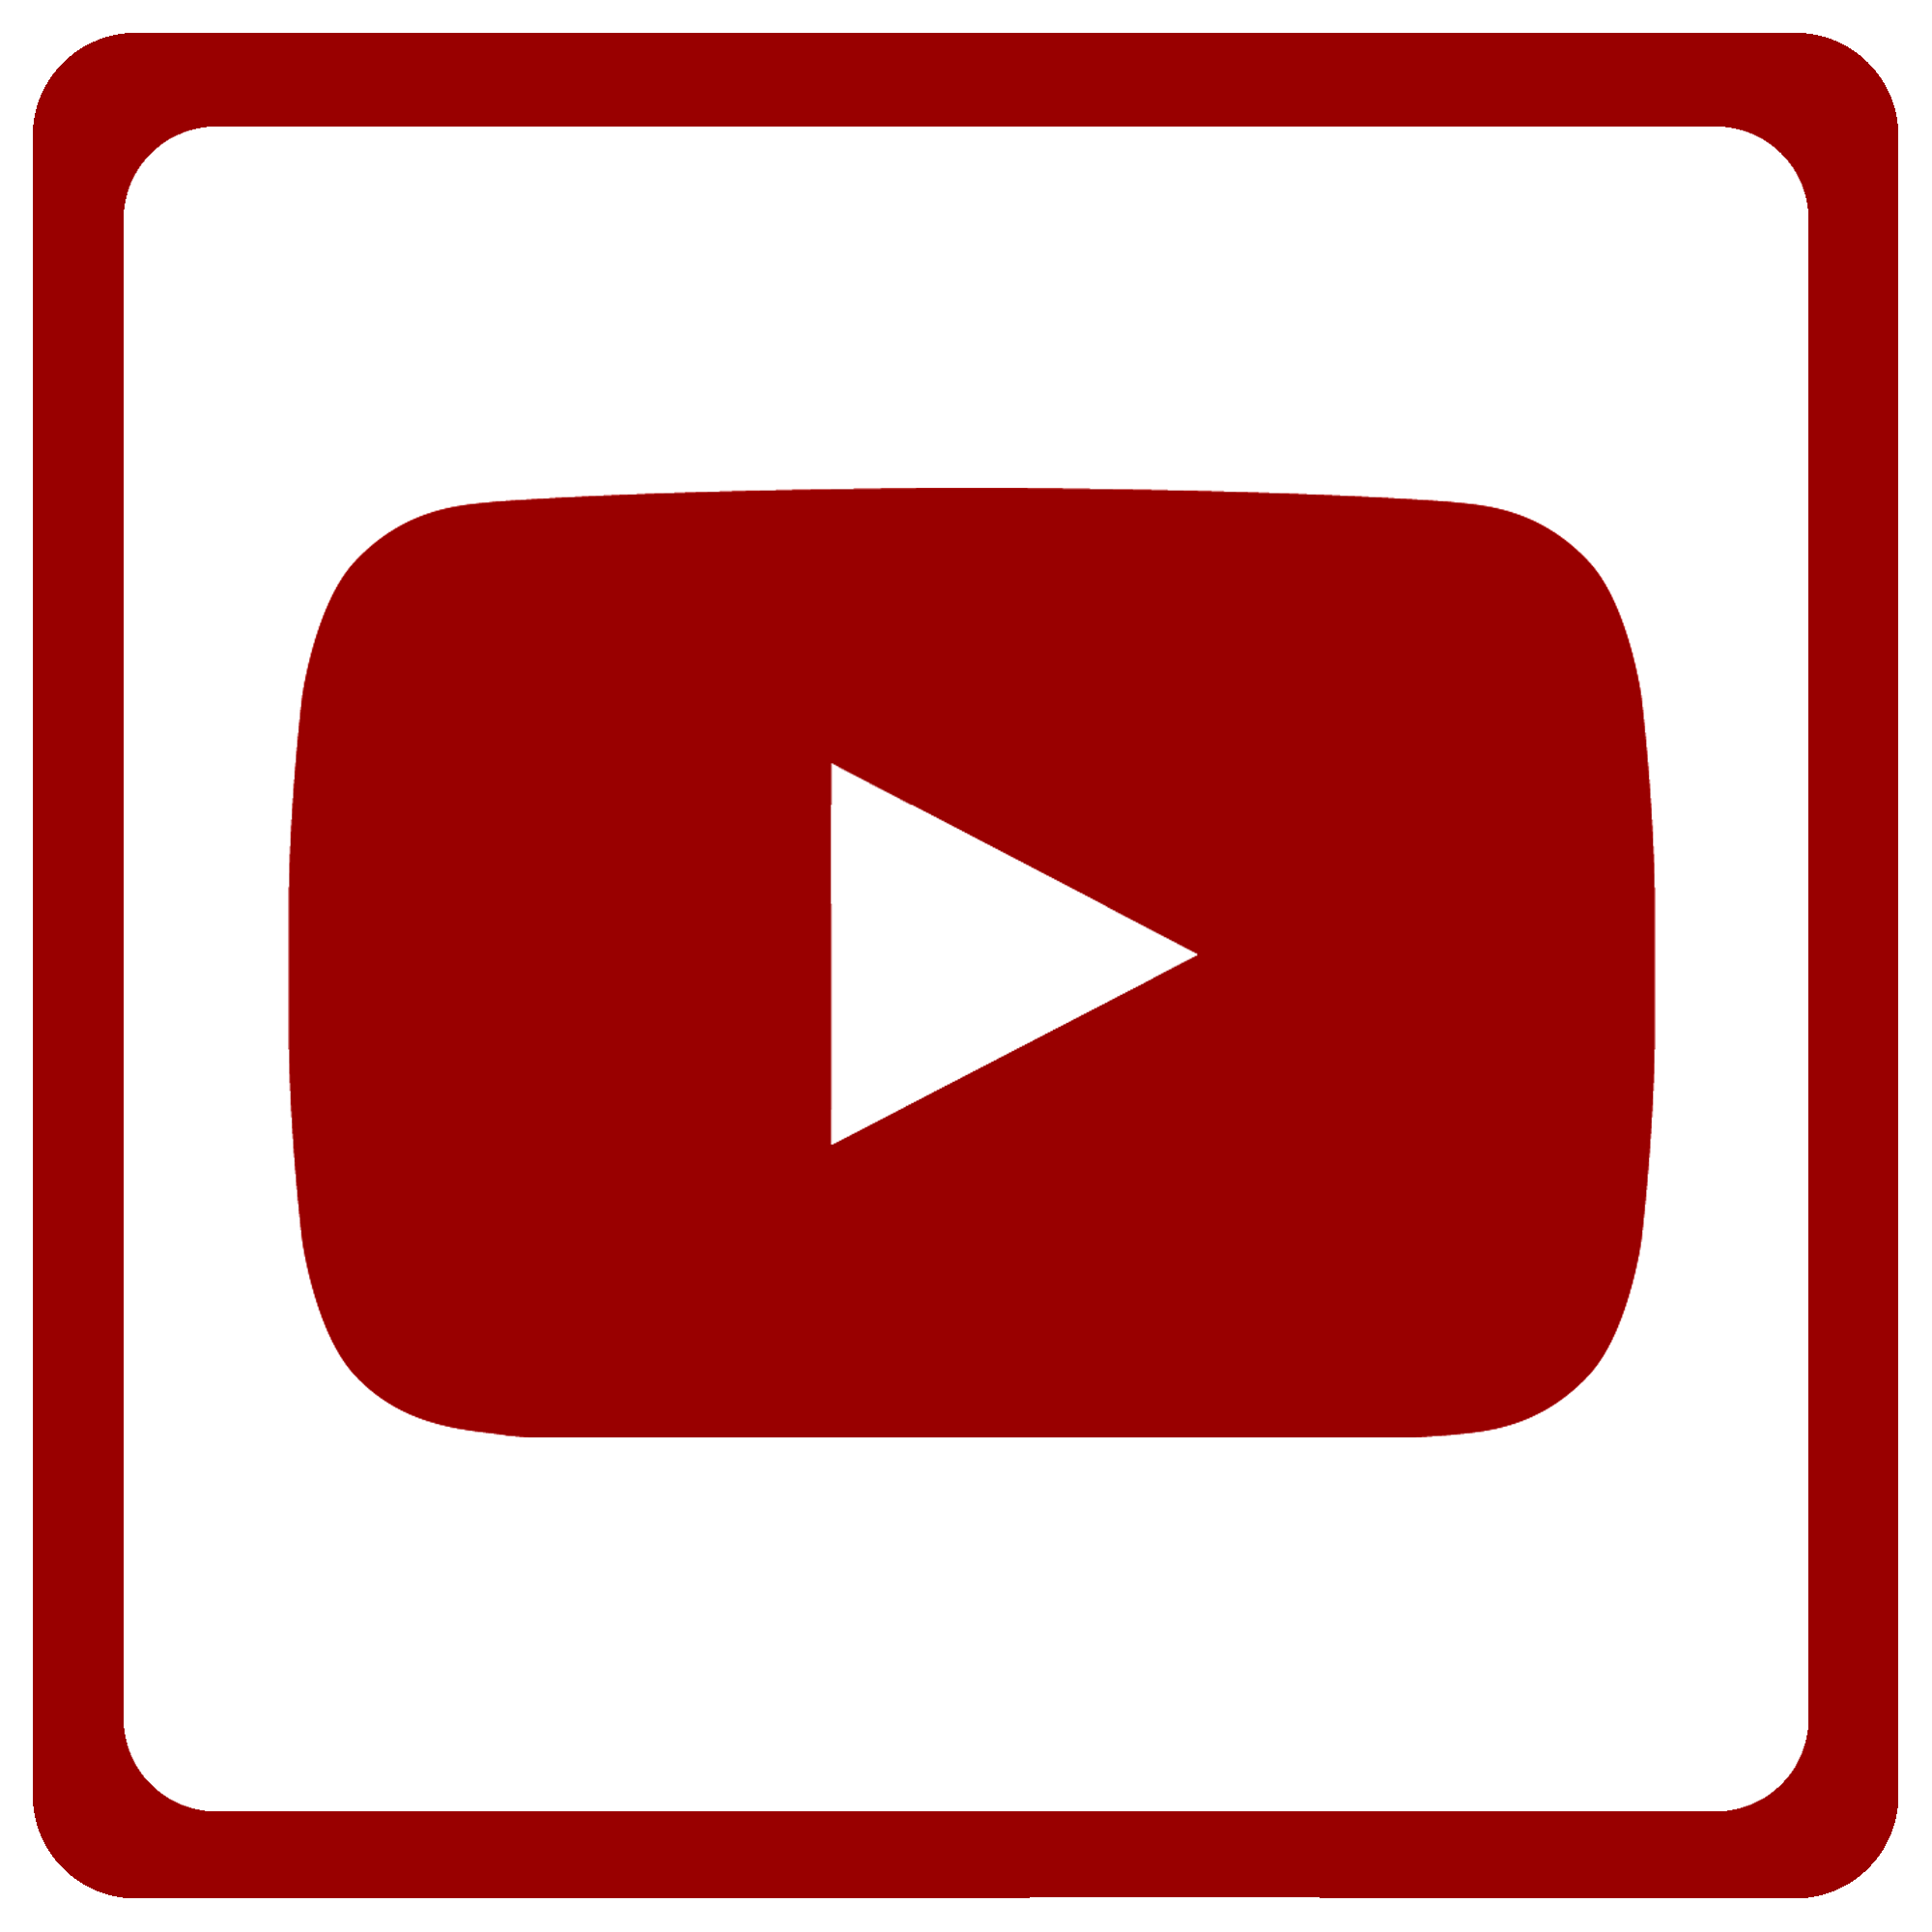 Youtube logo hd #2069 - Free Transparent PNG Logos